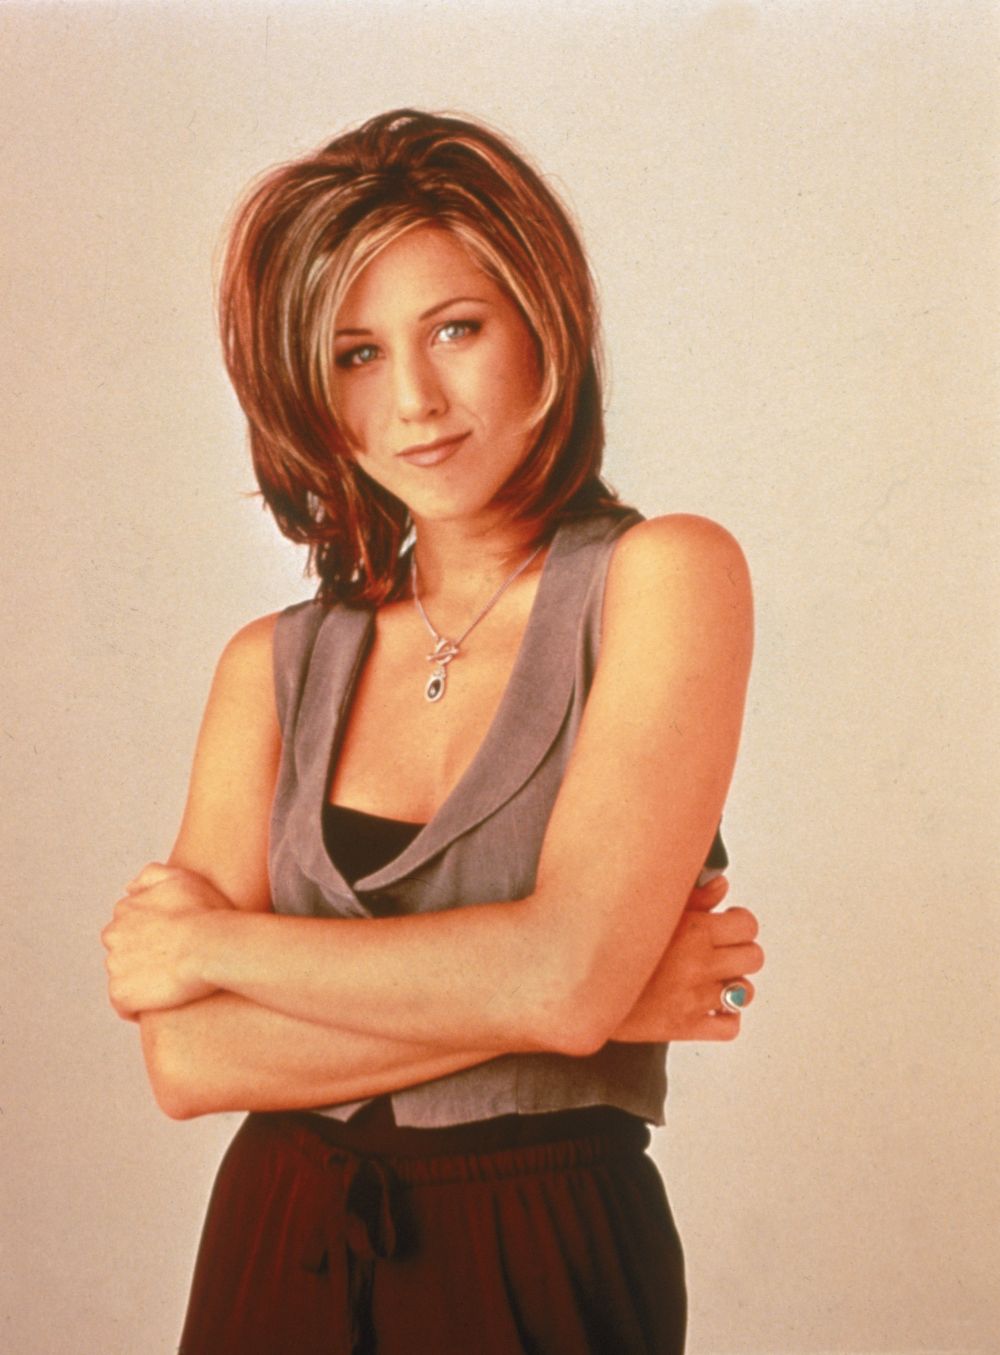 Има шест номинации за престижната телевизионна награда „Еми“ през периода 2000–2009 г., като печели единствено тази през 2002 г.